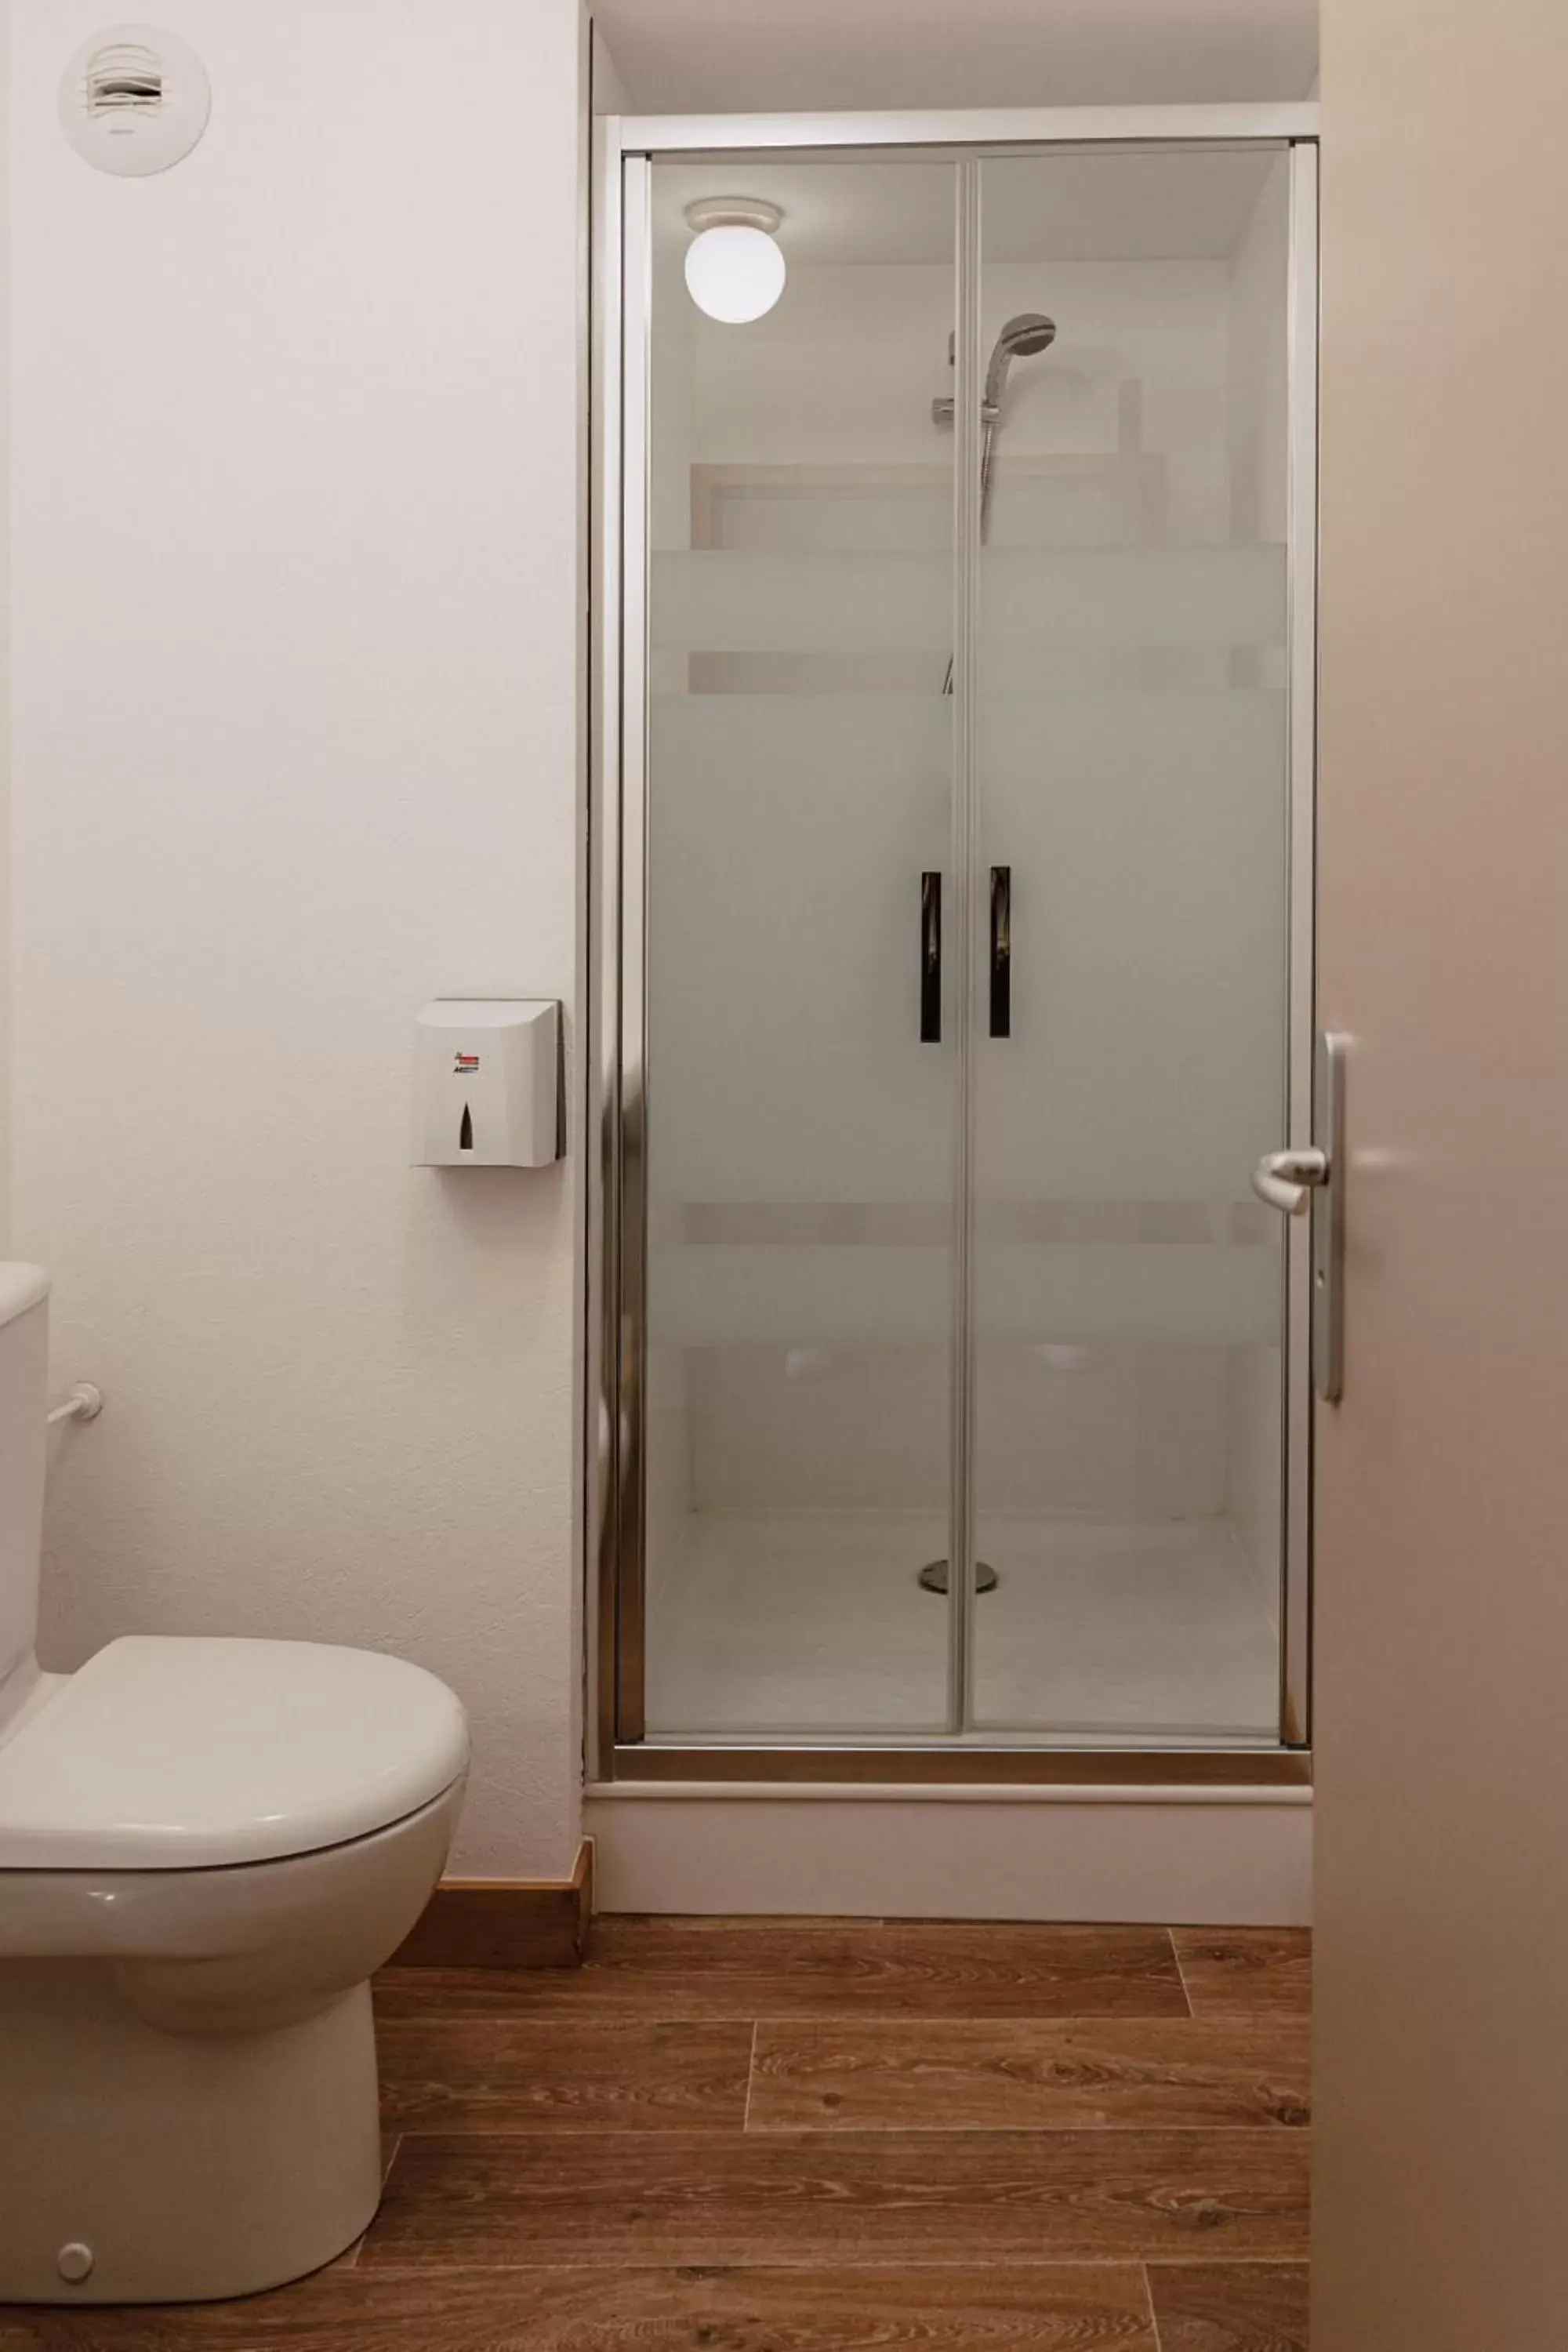 Shower, Bathroom in Mage hôtels - Hôtel la grenette - Brasserie Bonté Divine